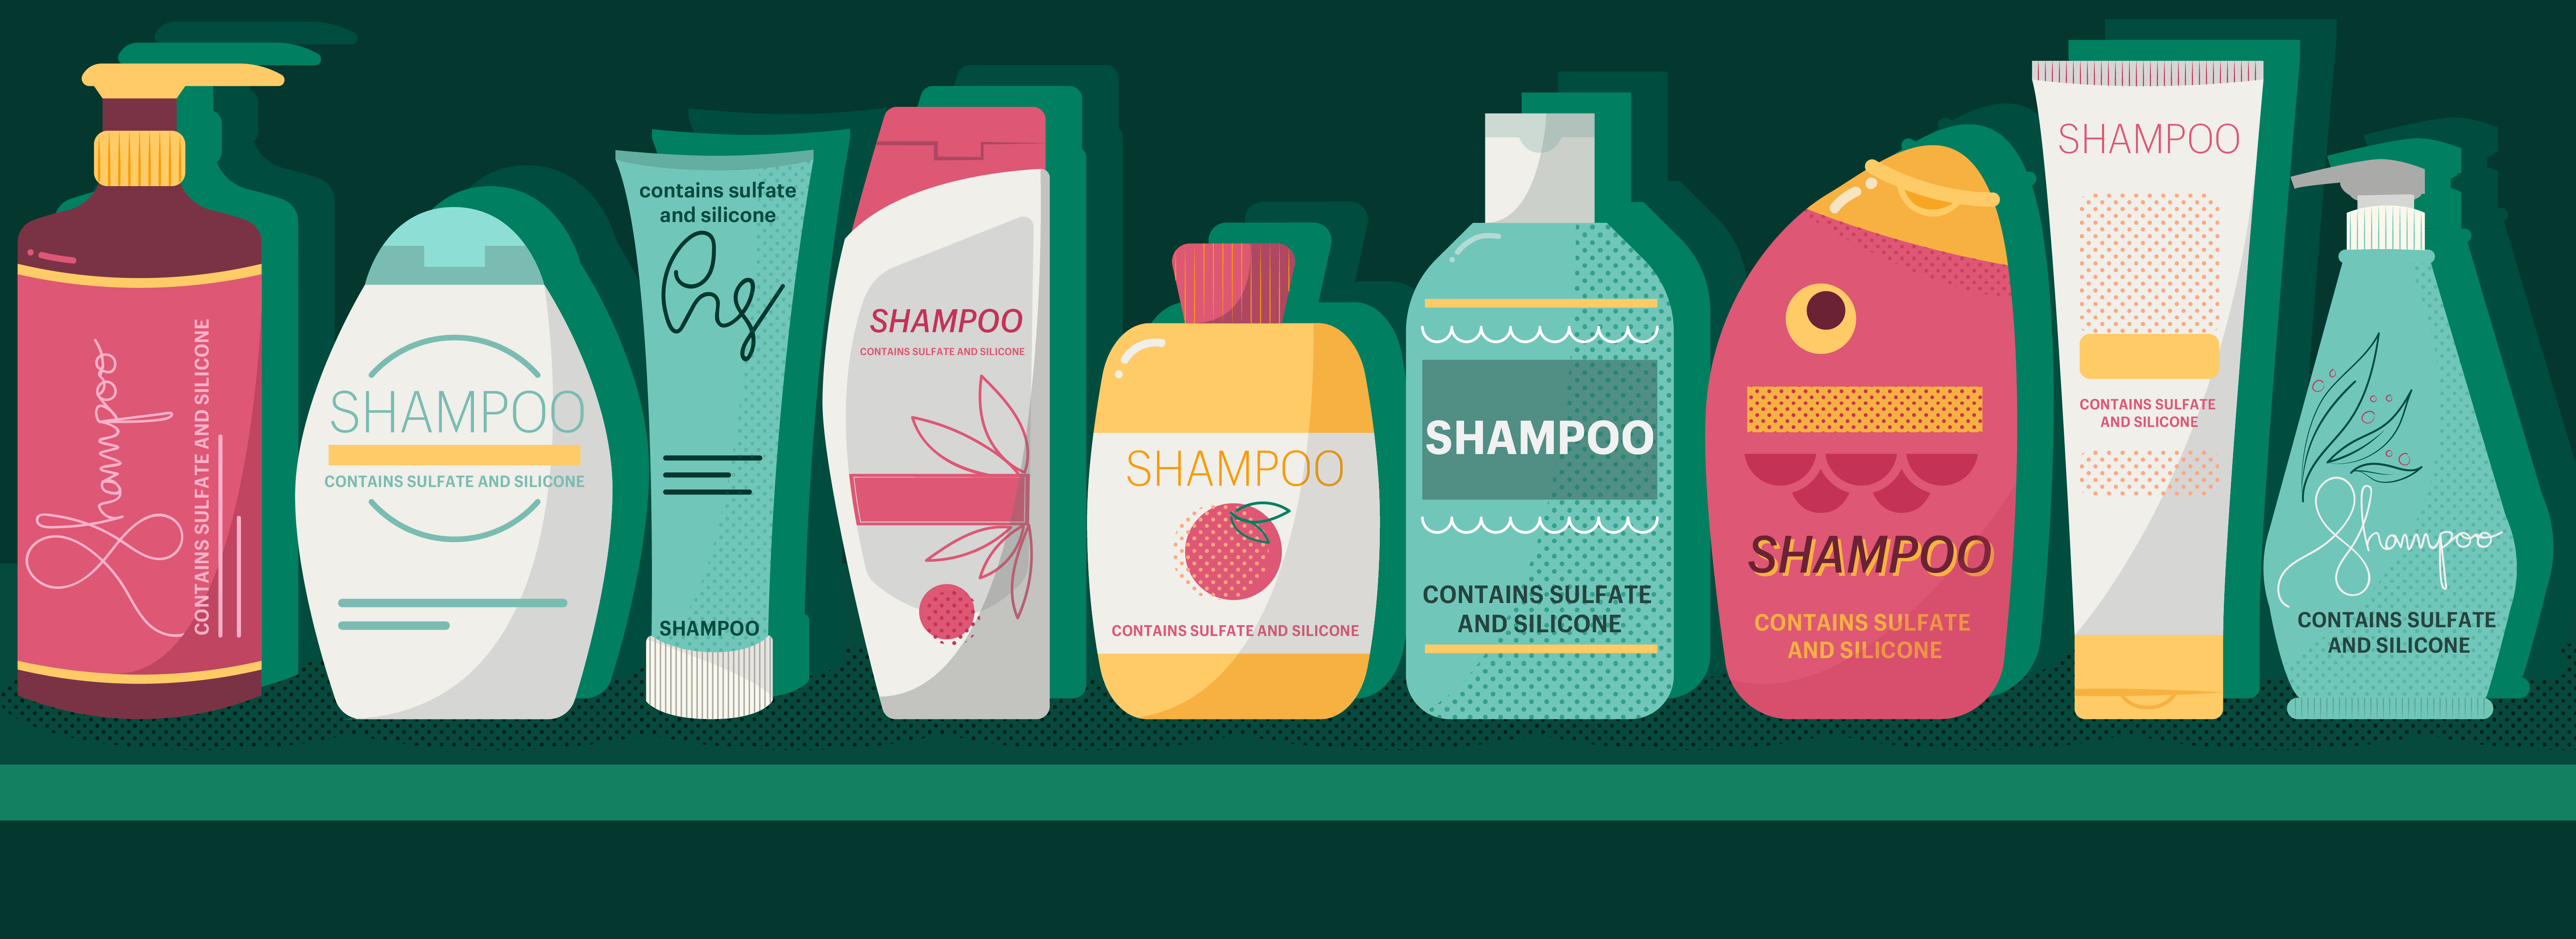 Shampoo-01